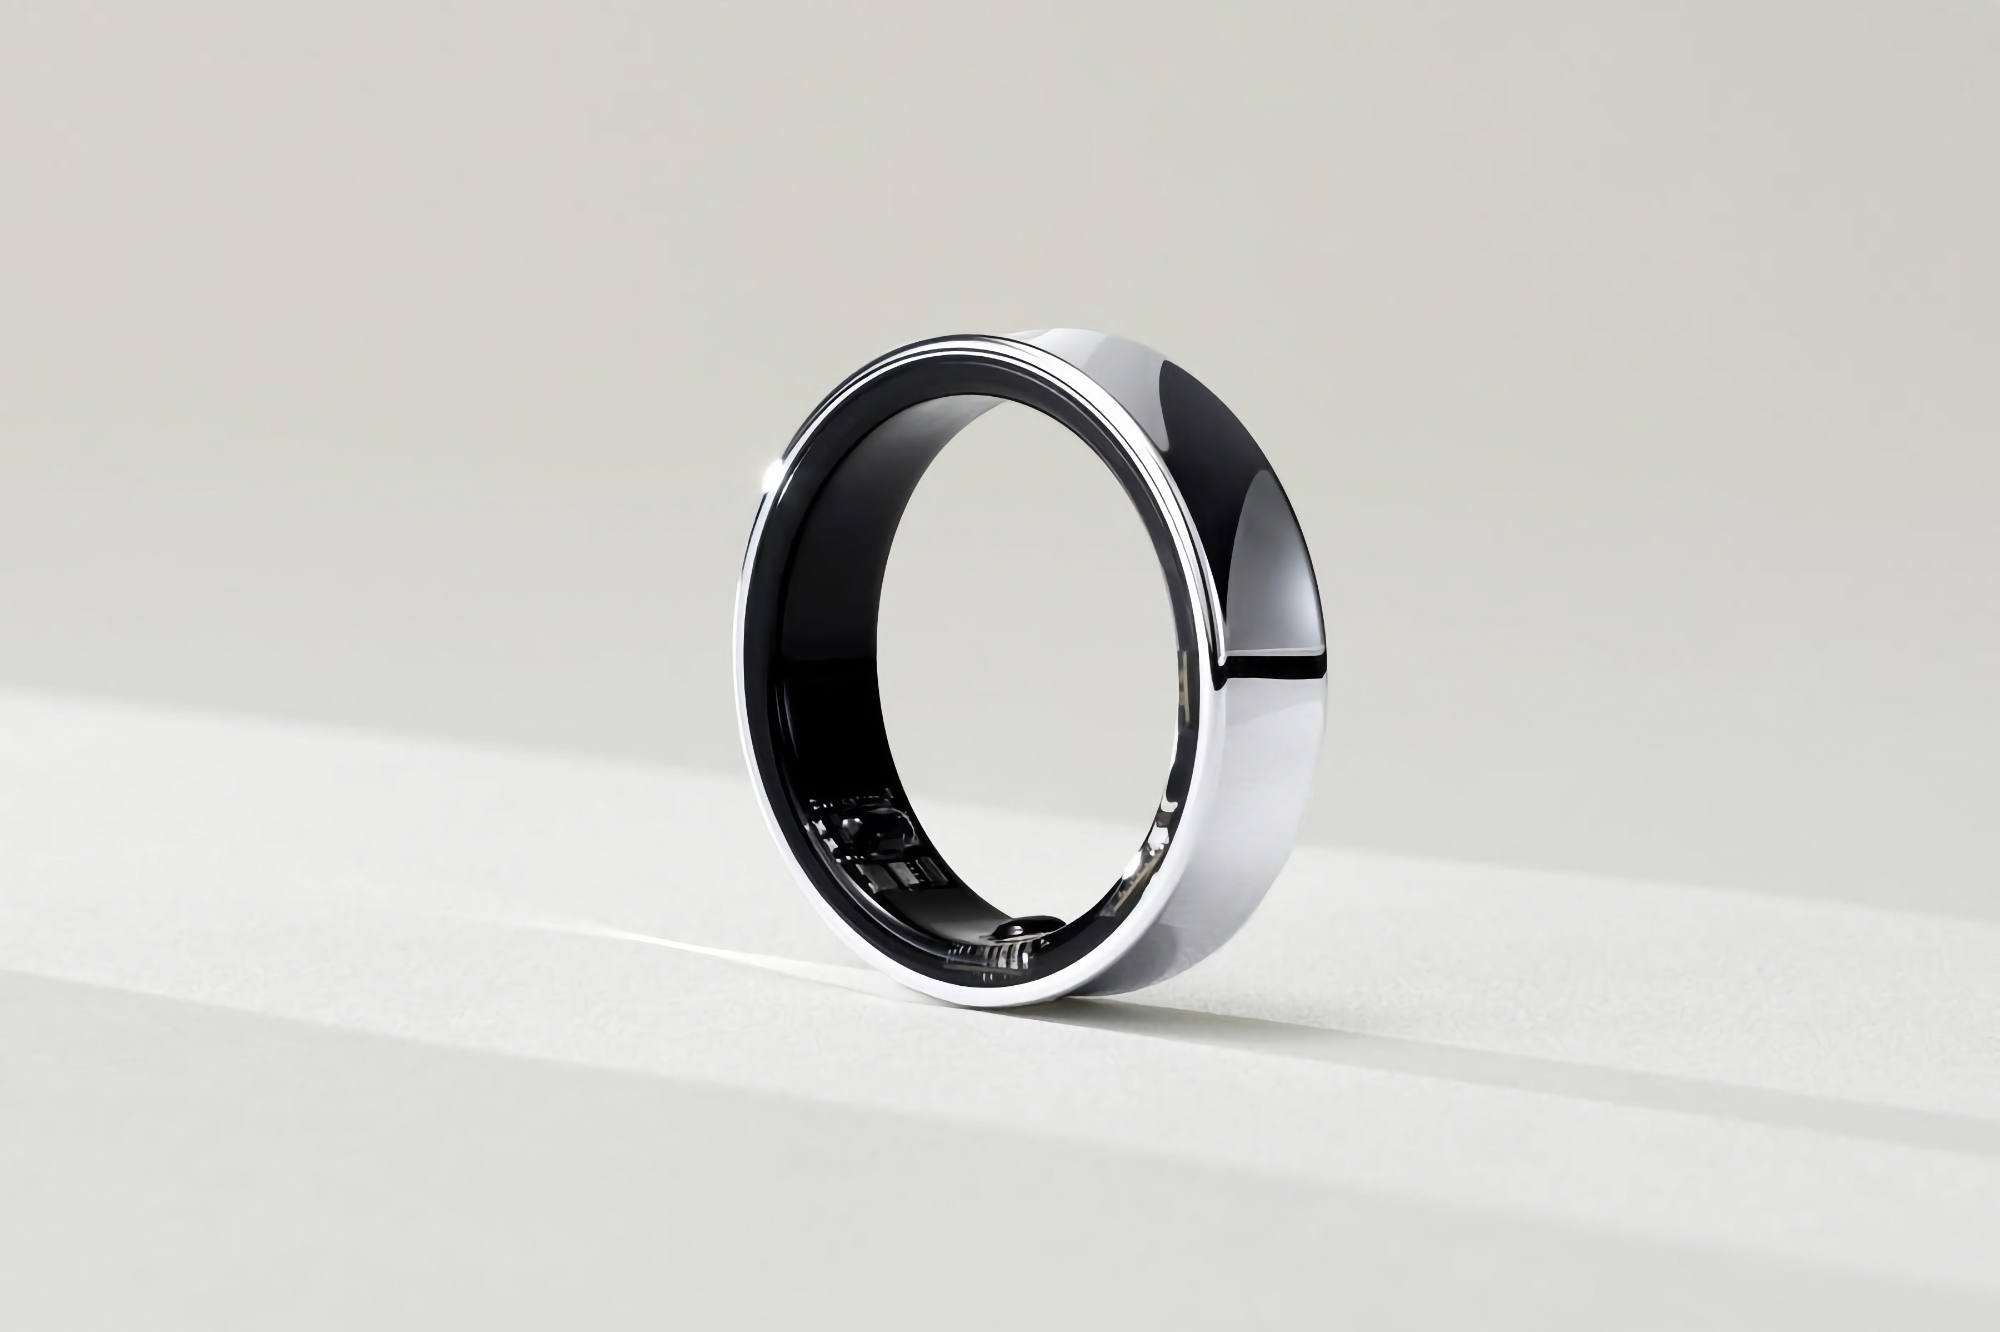 Liksom Apple Watch och Galaxy Watch: insider avslöjar hur mycket Samsung Galaxy Ring kommer att kosta 